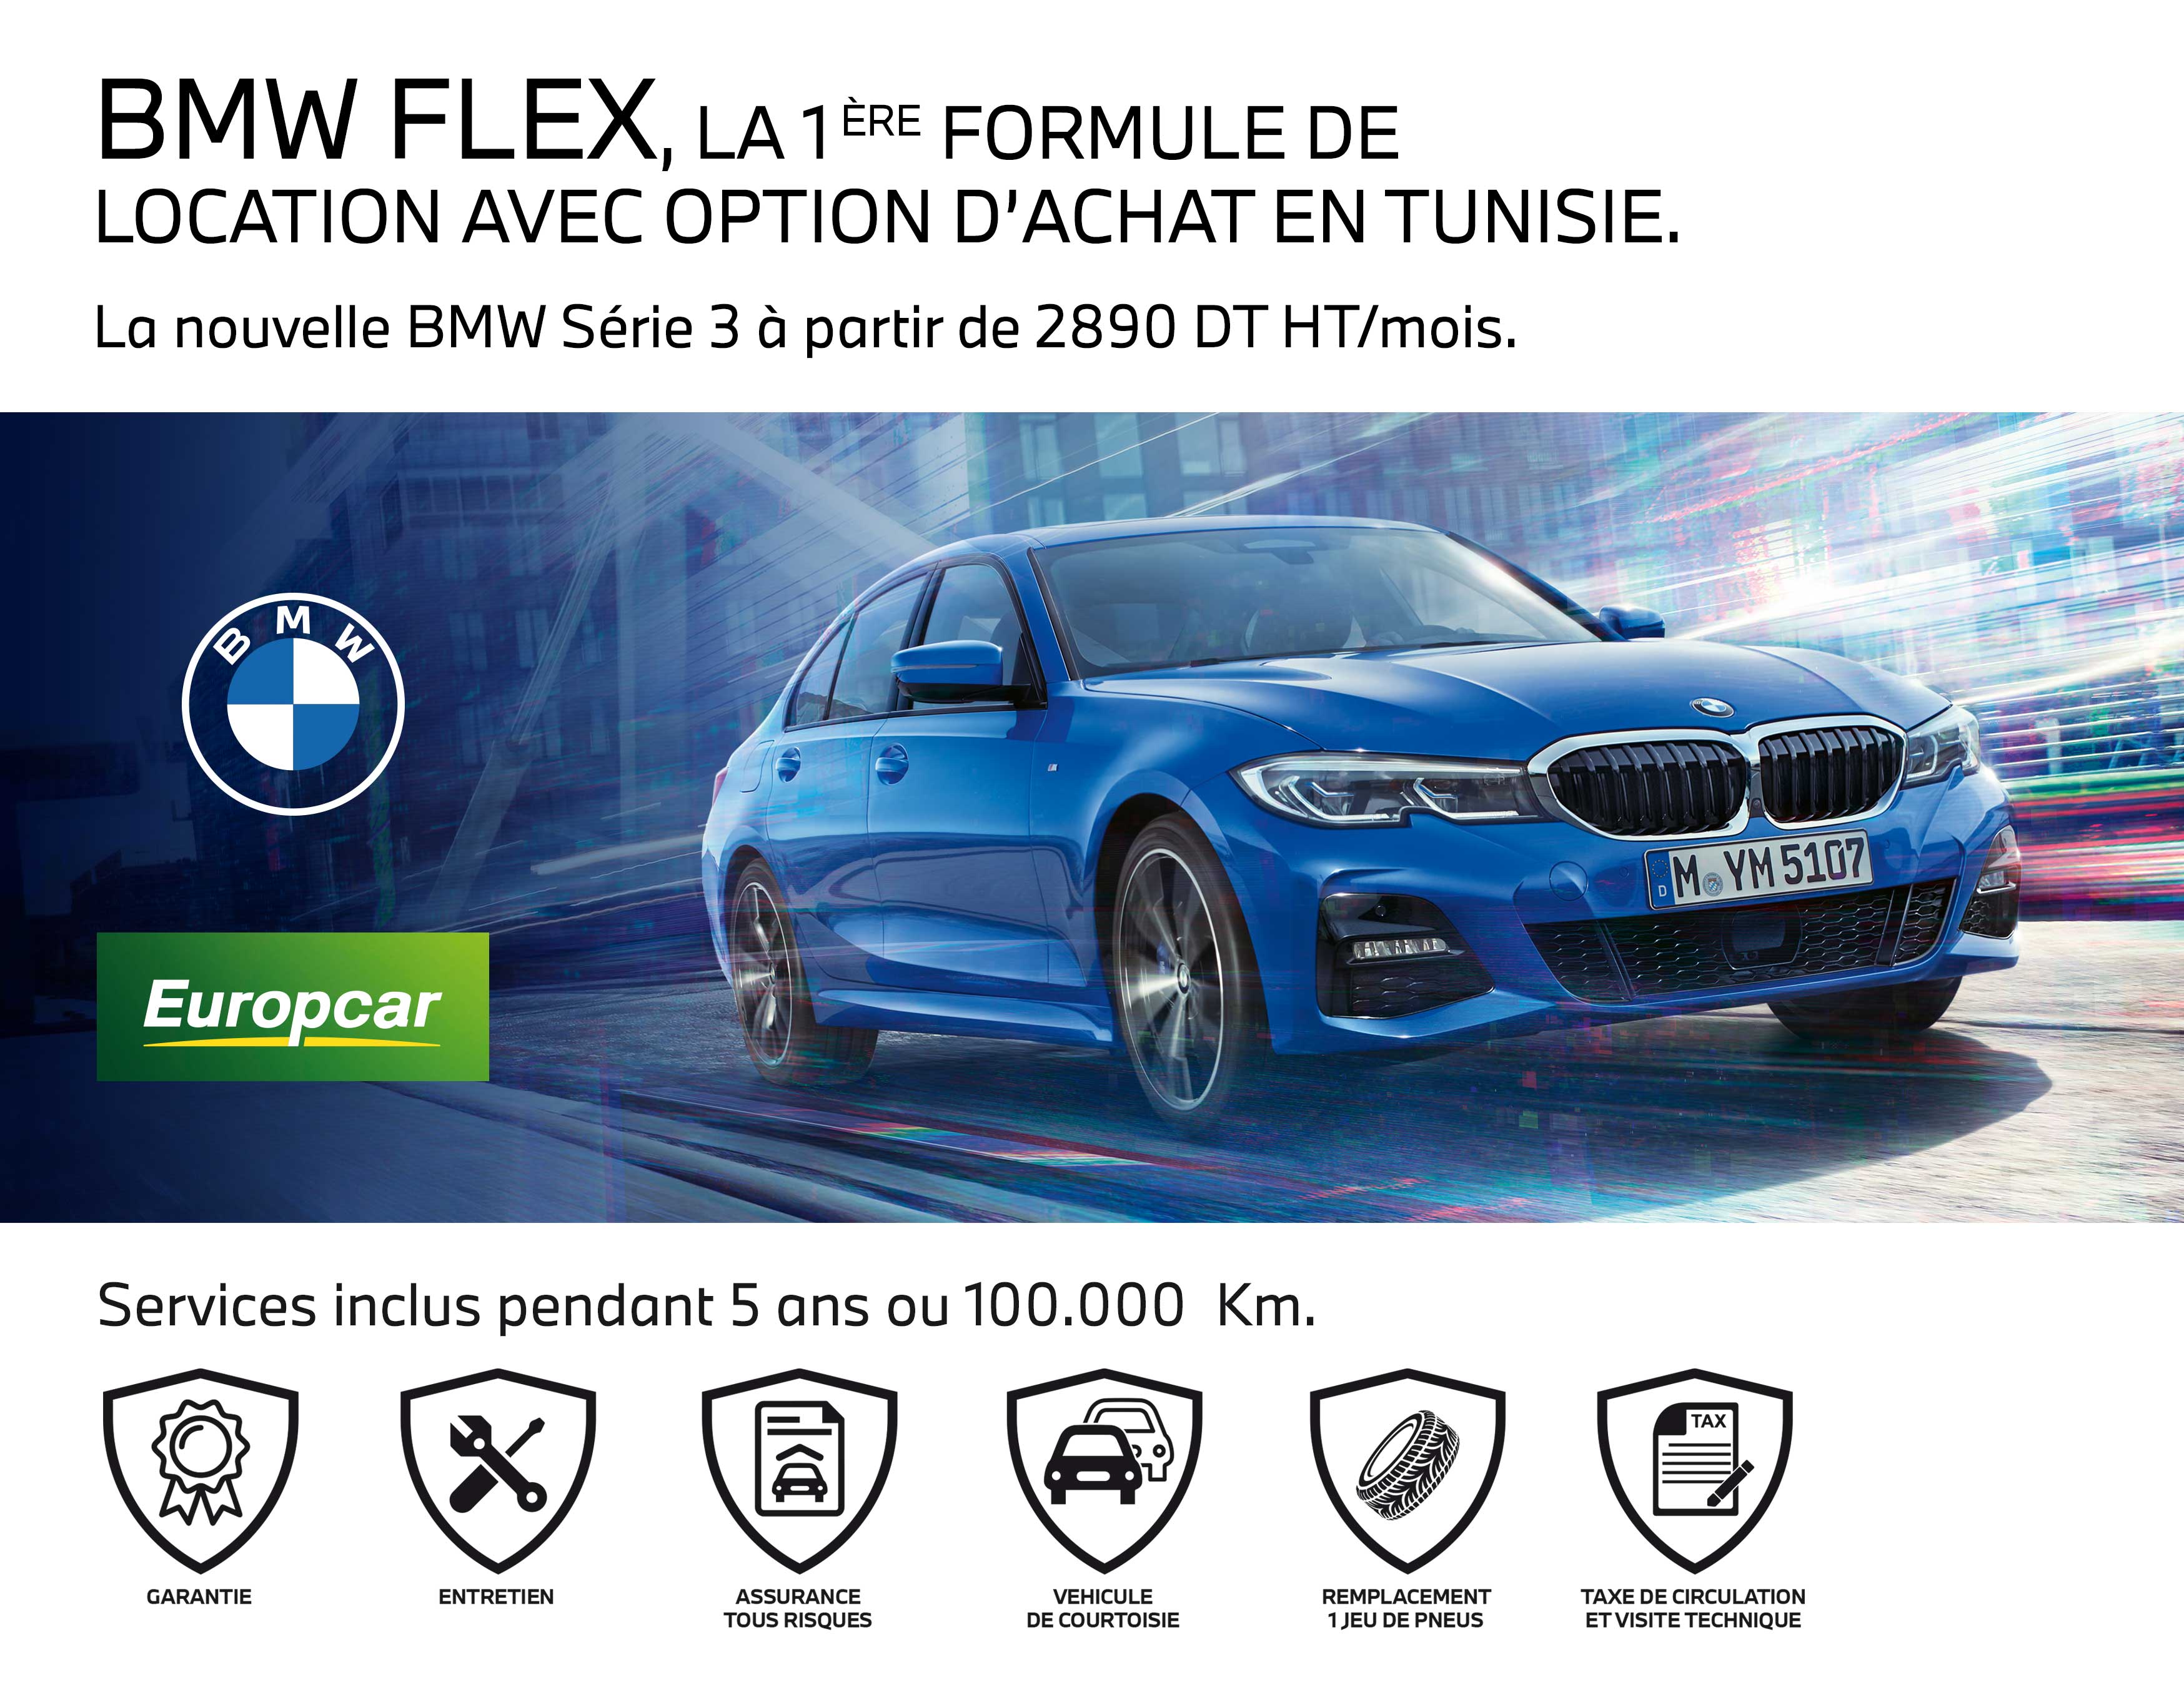 BMW Flex, la nouvelle formule all inclusive chez Ben Jemâa Motors